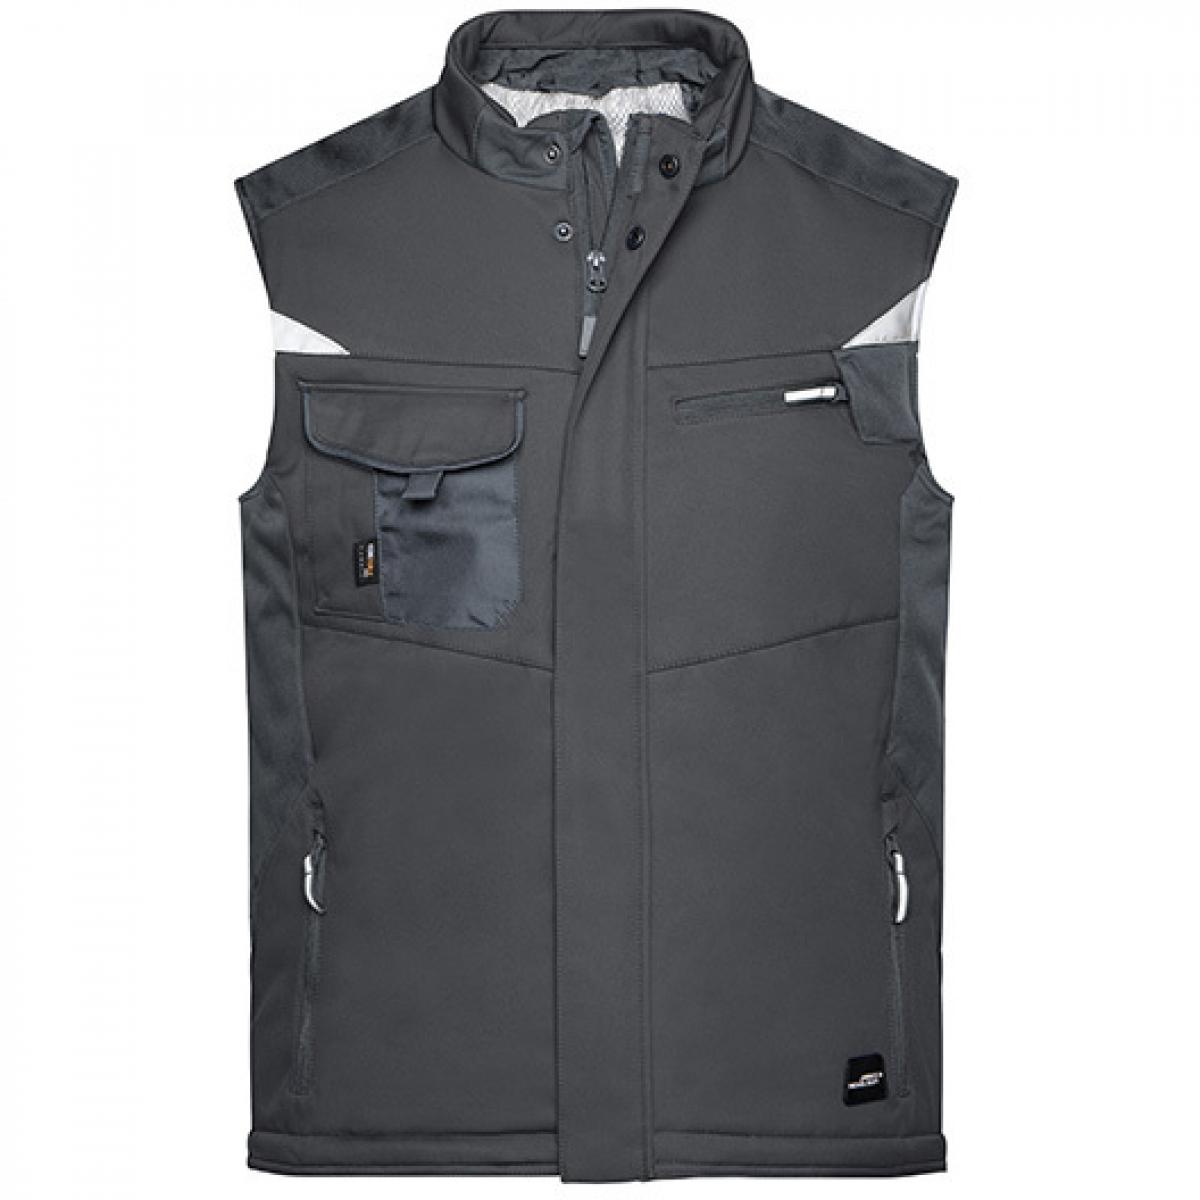 Hersteller: James+Nicholson Herstellernummer: JN825 Artikelbezeichnung: Herren Jacke, Craftsmen Softshell Vest -STRONG- Farbe: Black/Black